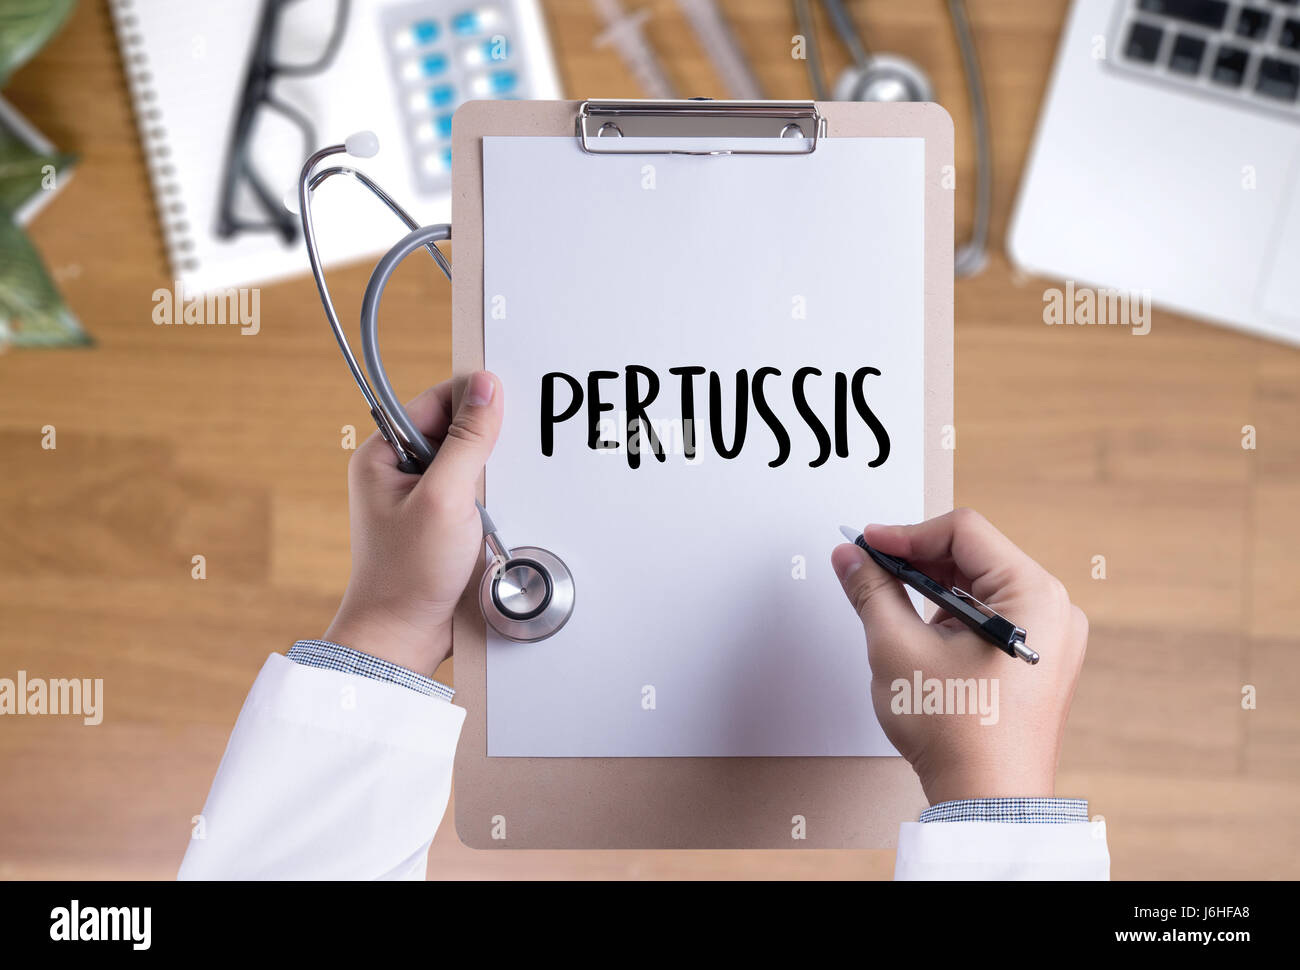 Pertussis Arzt Hand arbeiten professionelle medizinisches Konzept Stockfoto